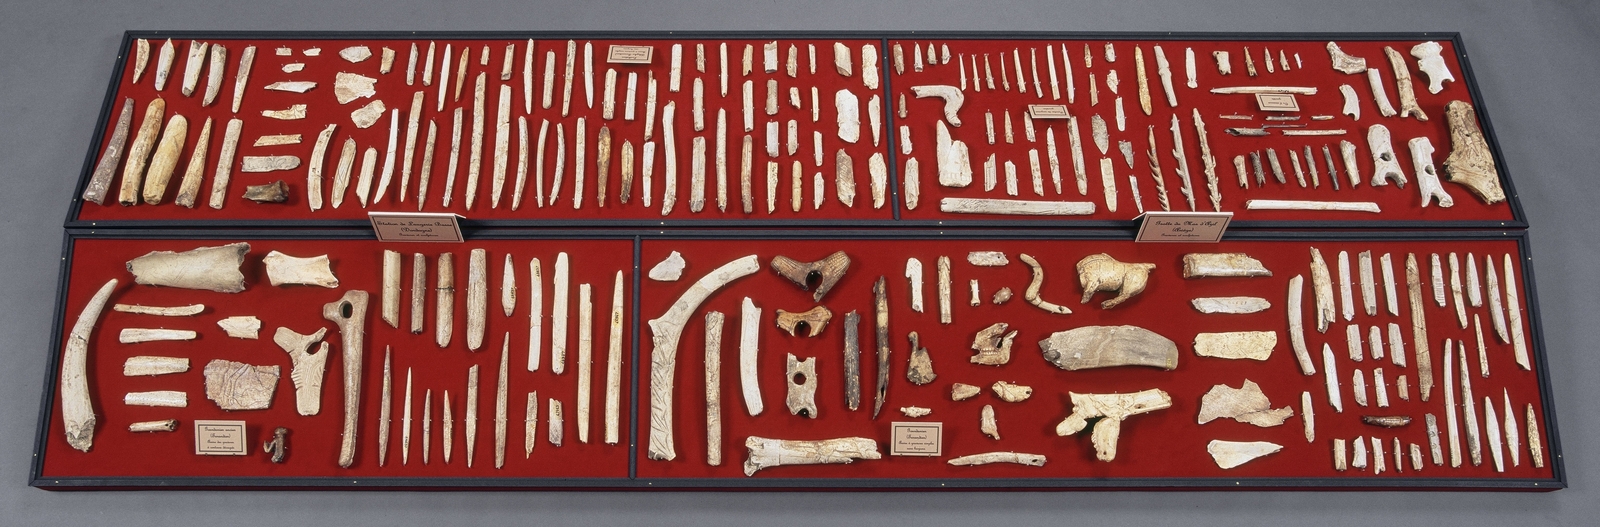 Vitrine-table 2 (ex 3) de la Salle Piette. Musée d'Archéologie nationale. L'Homme de Tautavel.